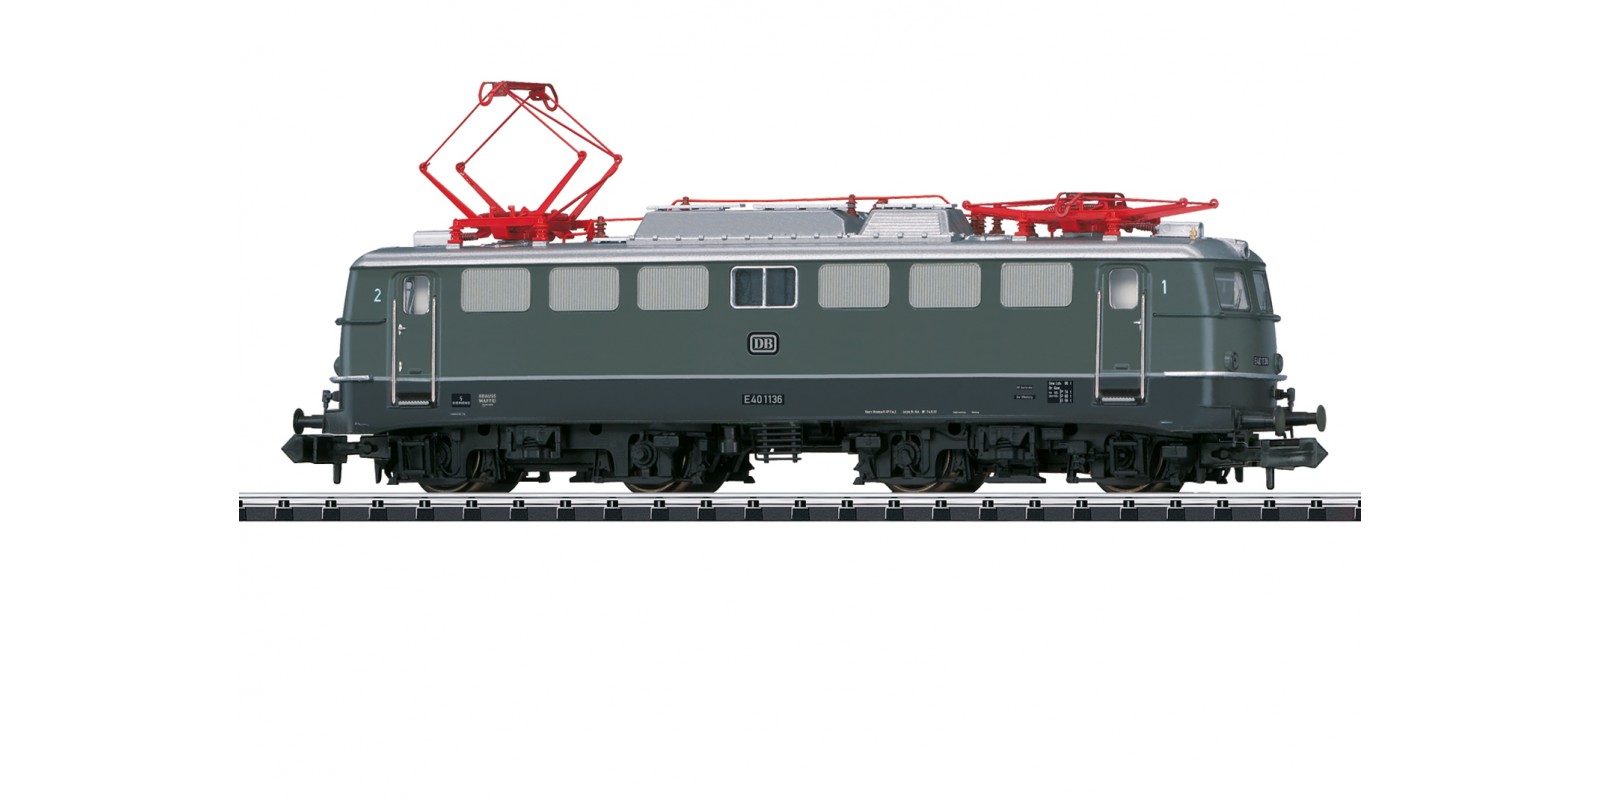 T16402 Class E 40 Electric Locomotive